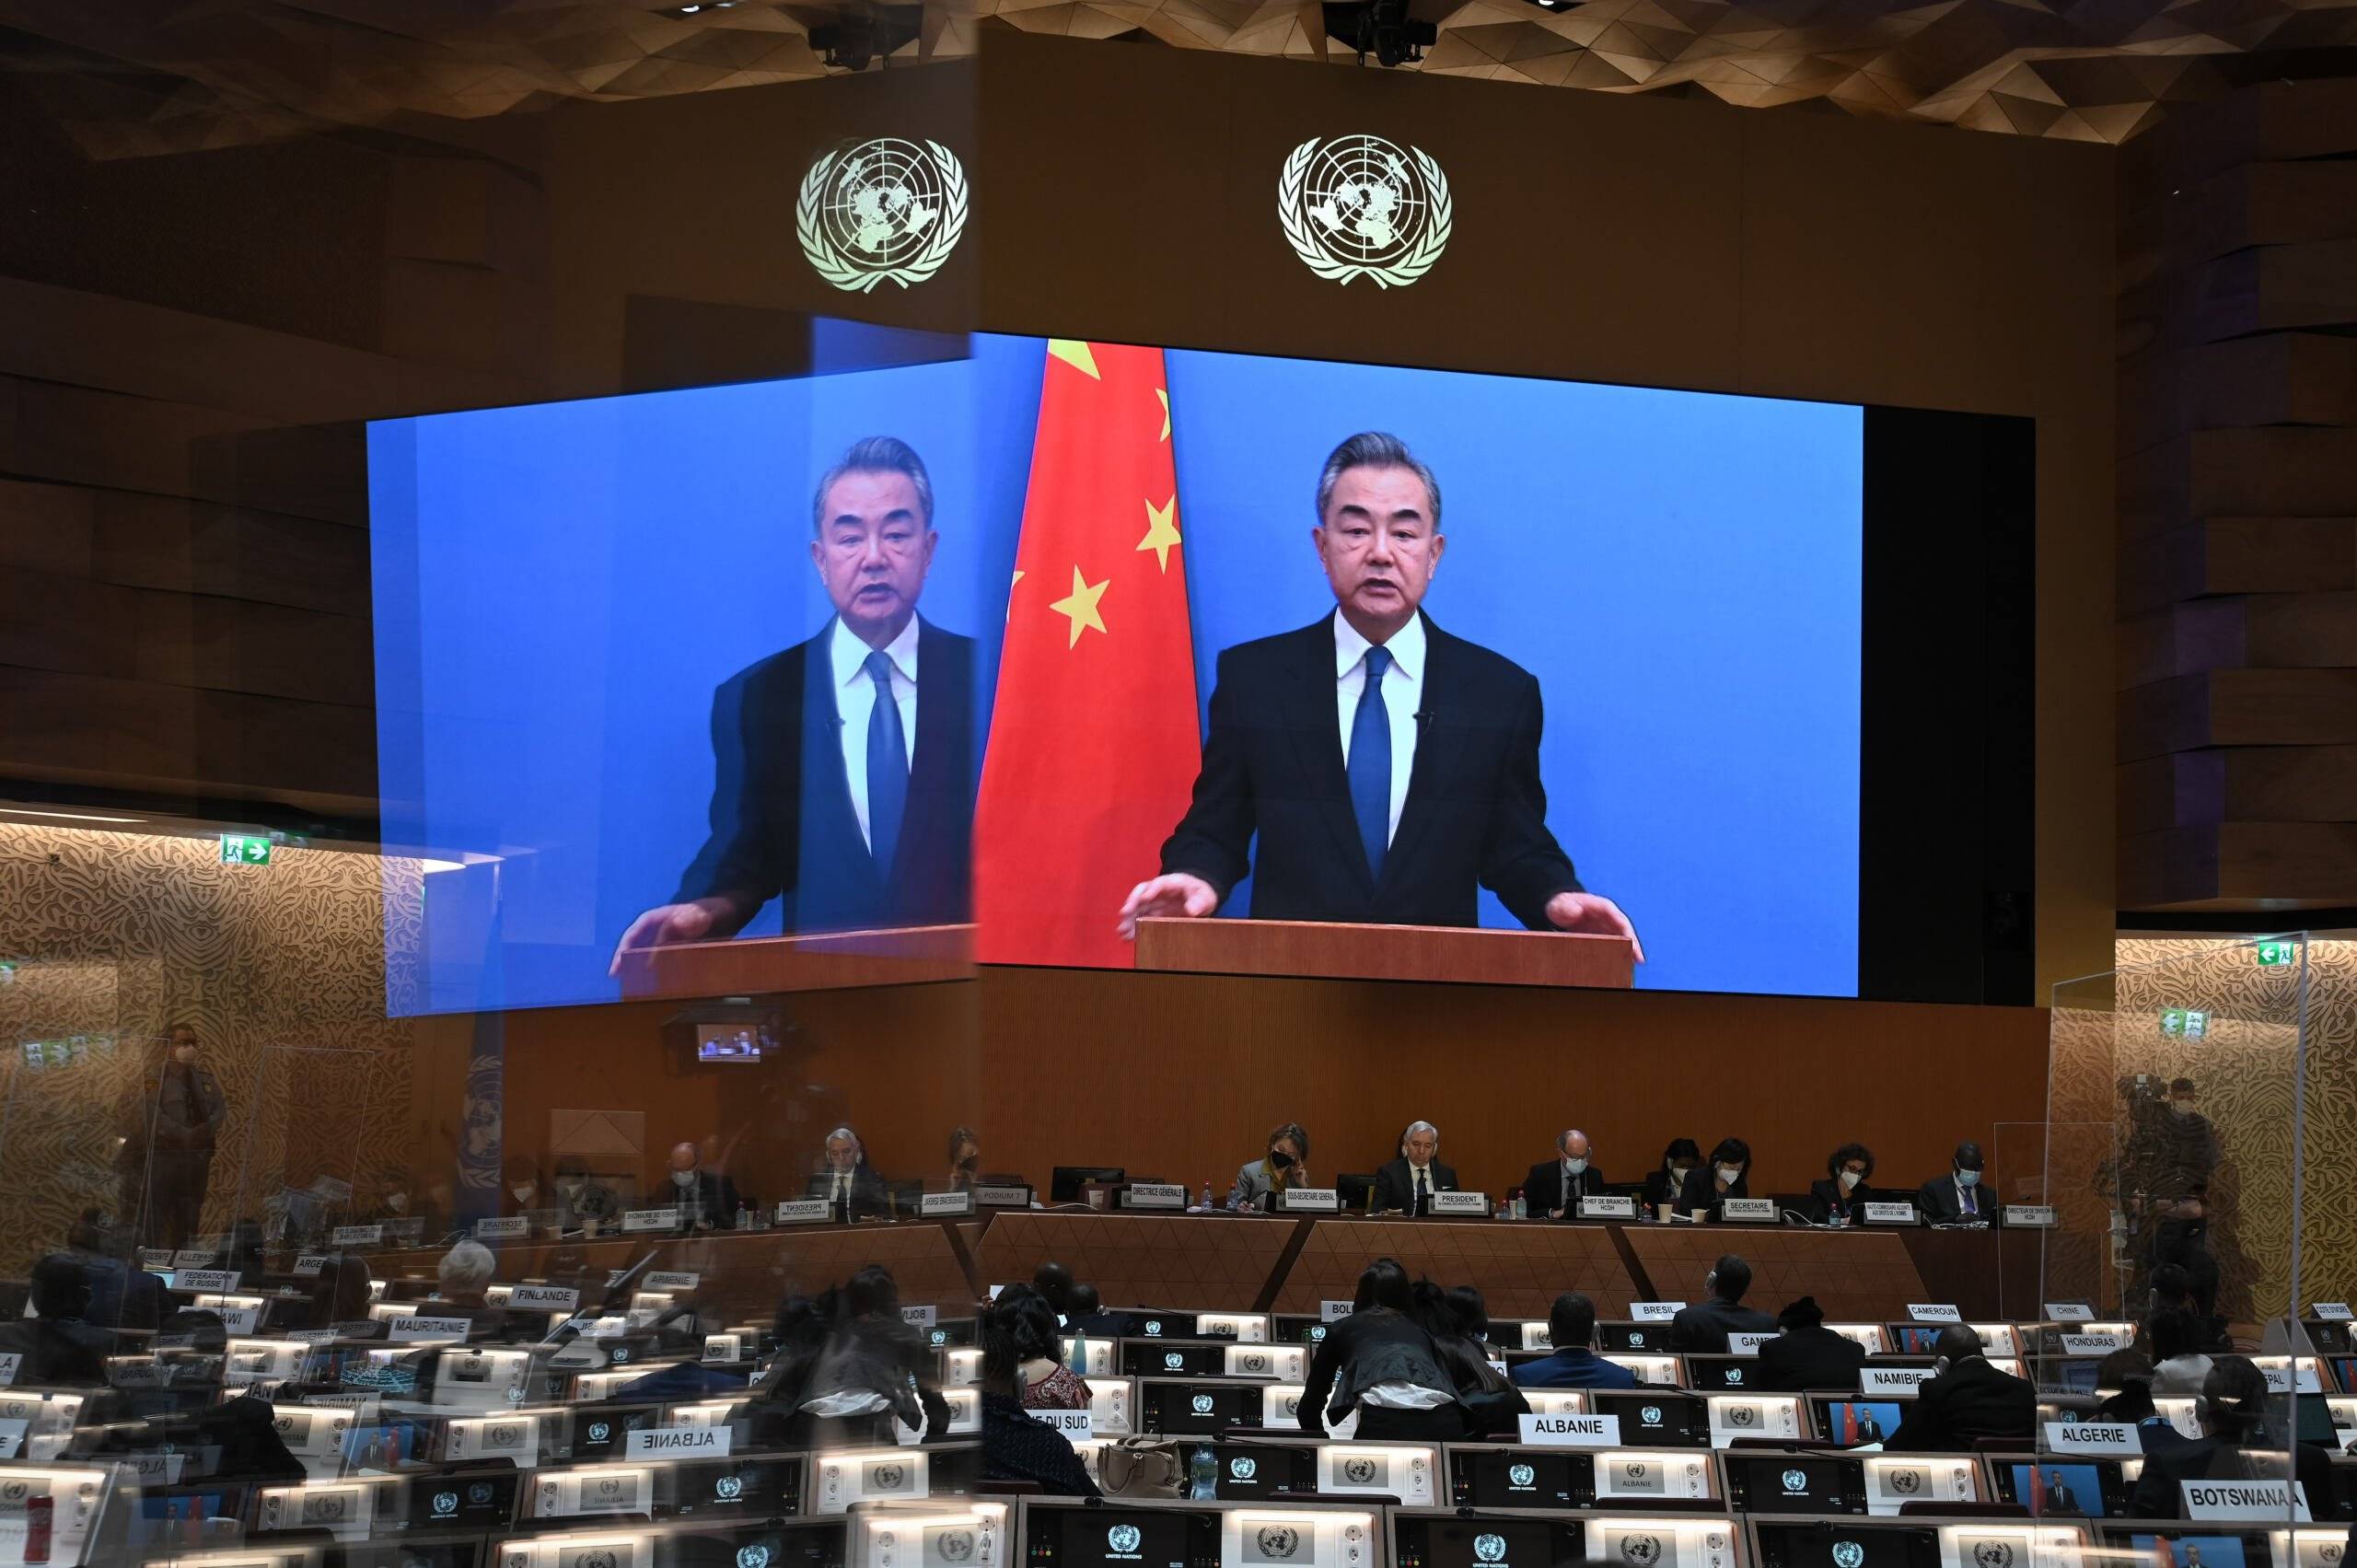 Szef chińskiego MSZ Wang Yi na ekranie przemawia w ONZ, obok chińska flaga